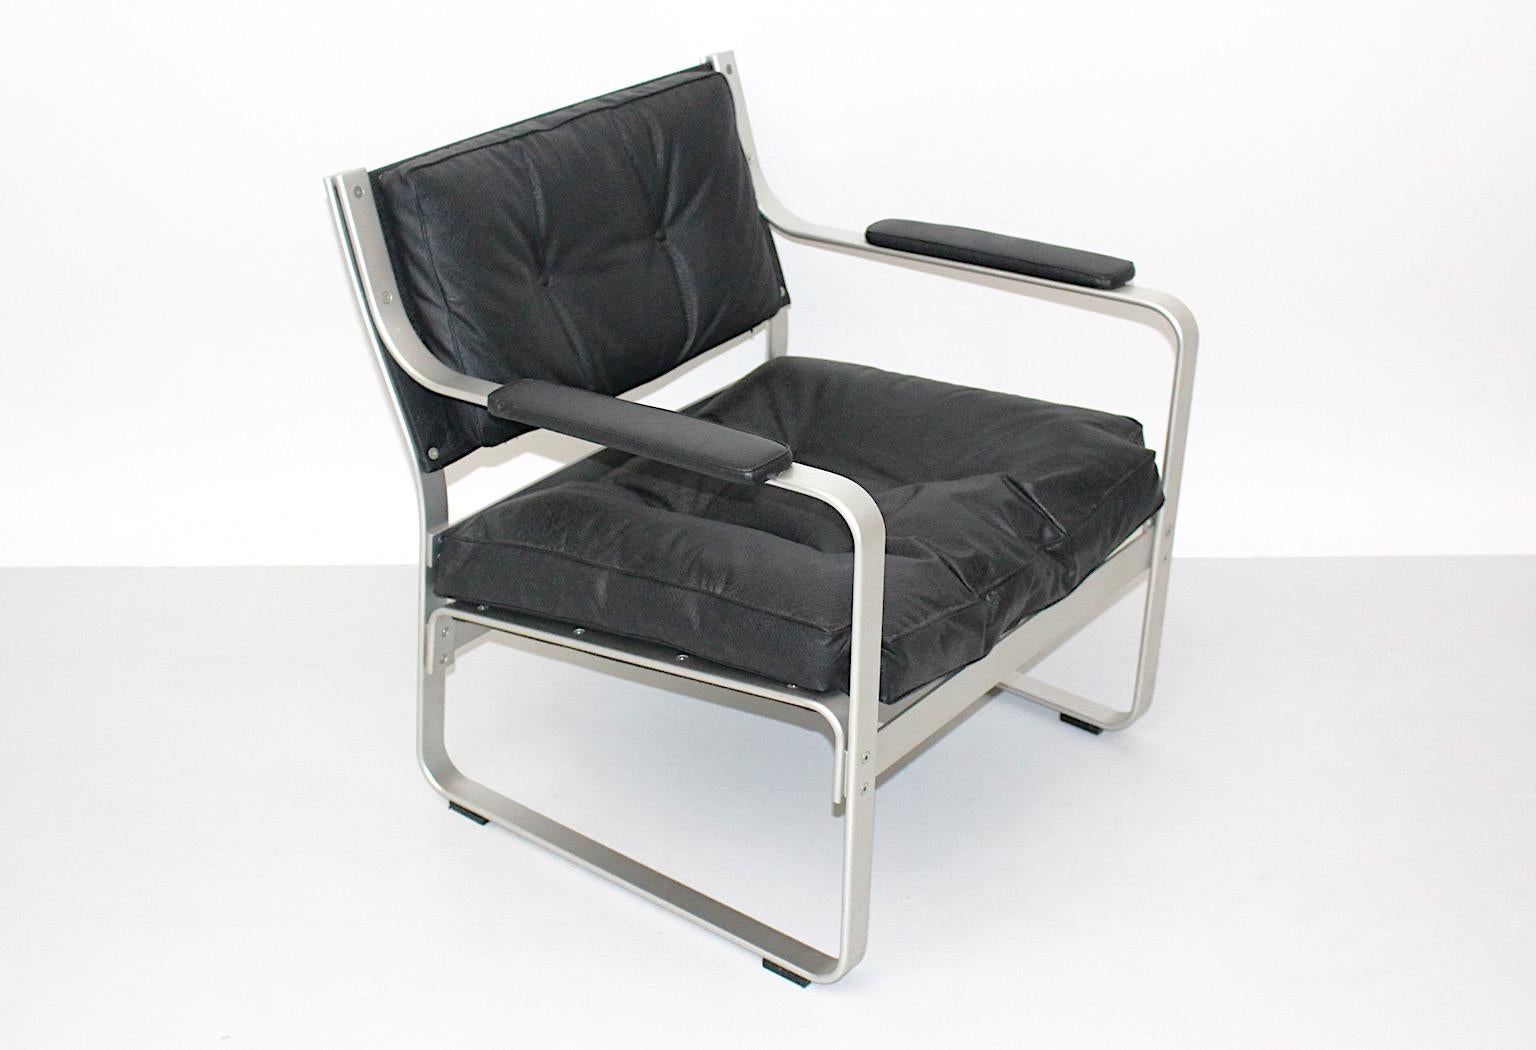 Space Age Vintage Lounge Chair oder Clubsessel oder Beistellstuhl aus Aluminium und schwarzem Kunstleder von
Karl- Erik Ekselius für JOC Vetlanda Schweden.
Durch seinen Aluminiumrahmen in Silberton verbreitet der Loungesessel eine leichte